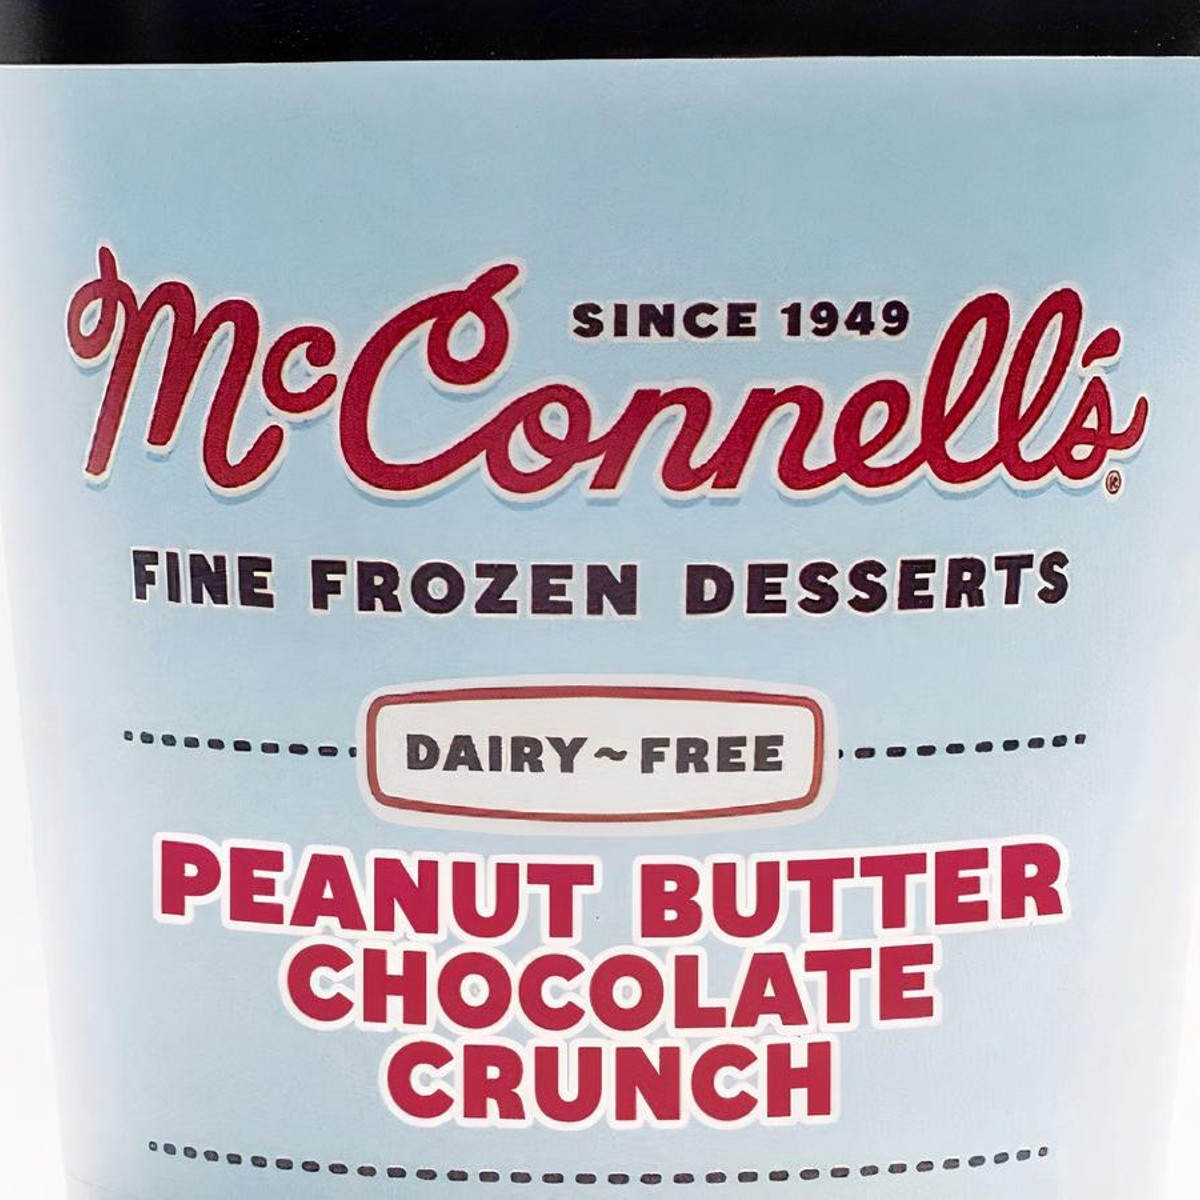 McConnell's Fine Ice Creams  McConnell's Fine Ice Creams ⎜Santa